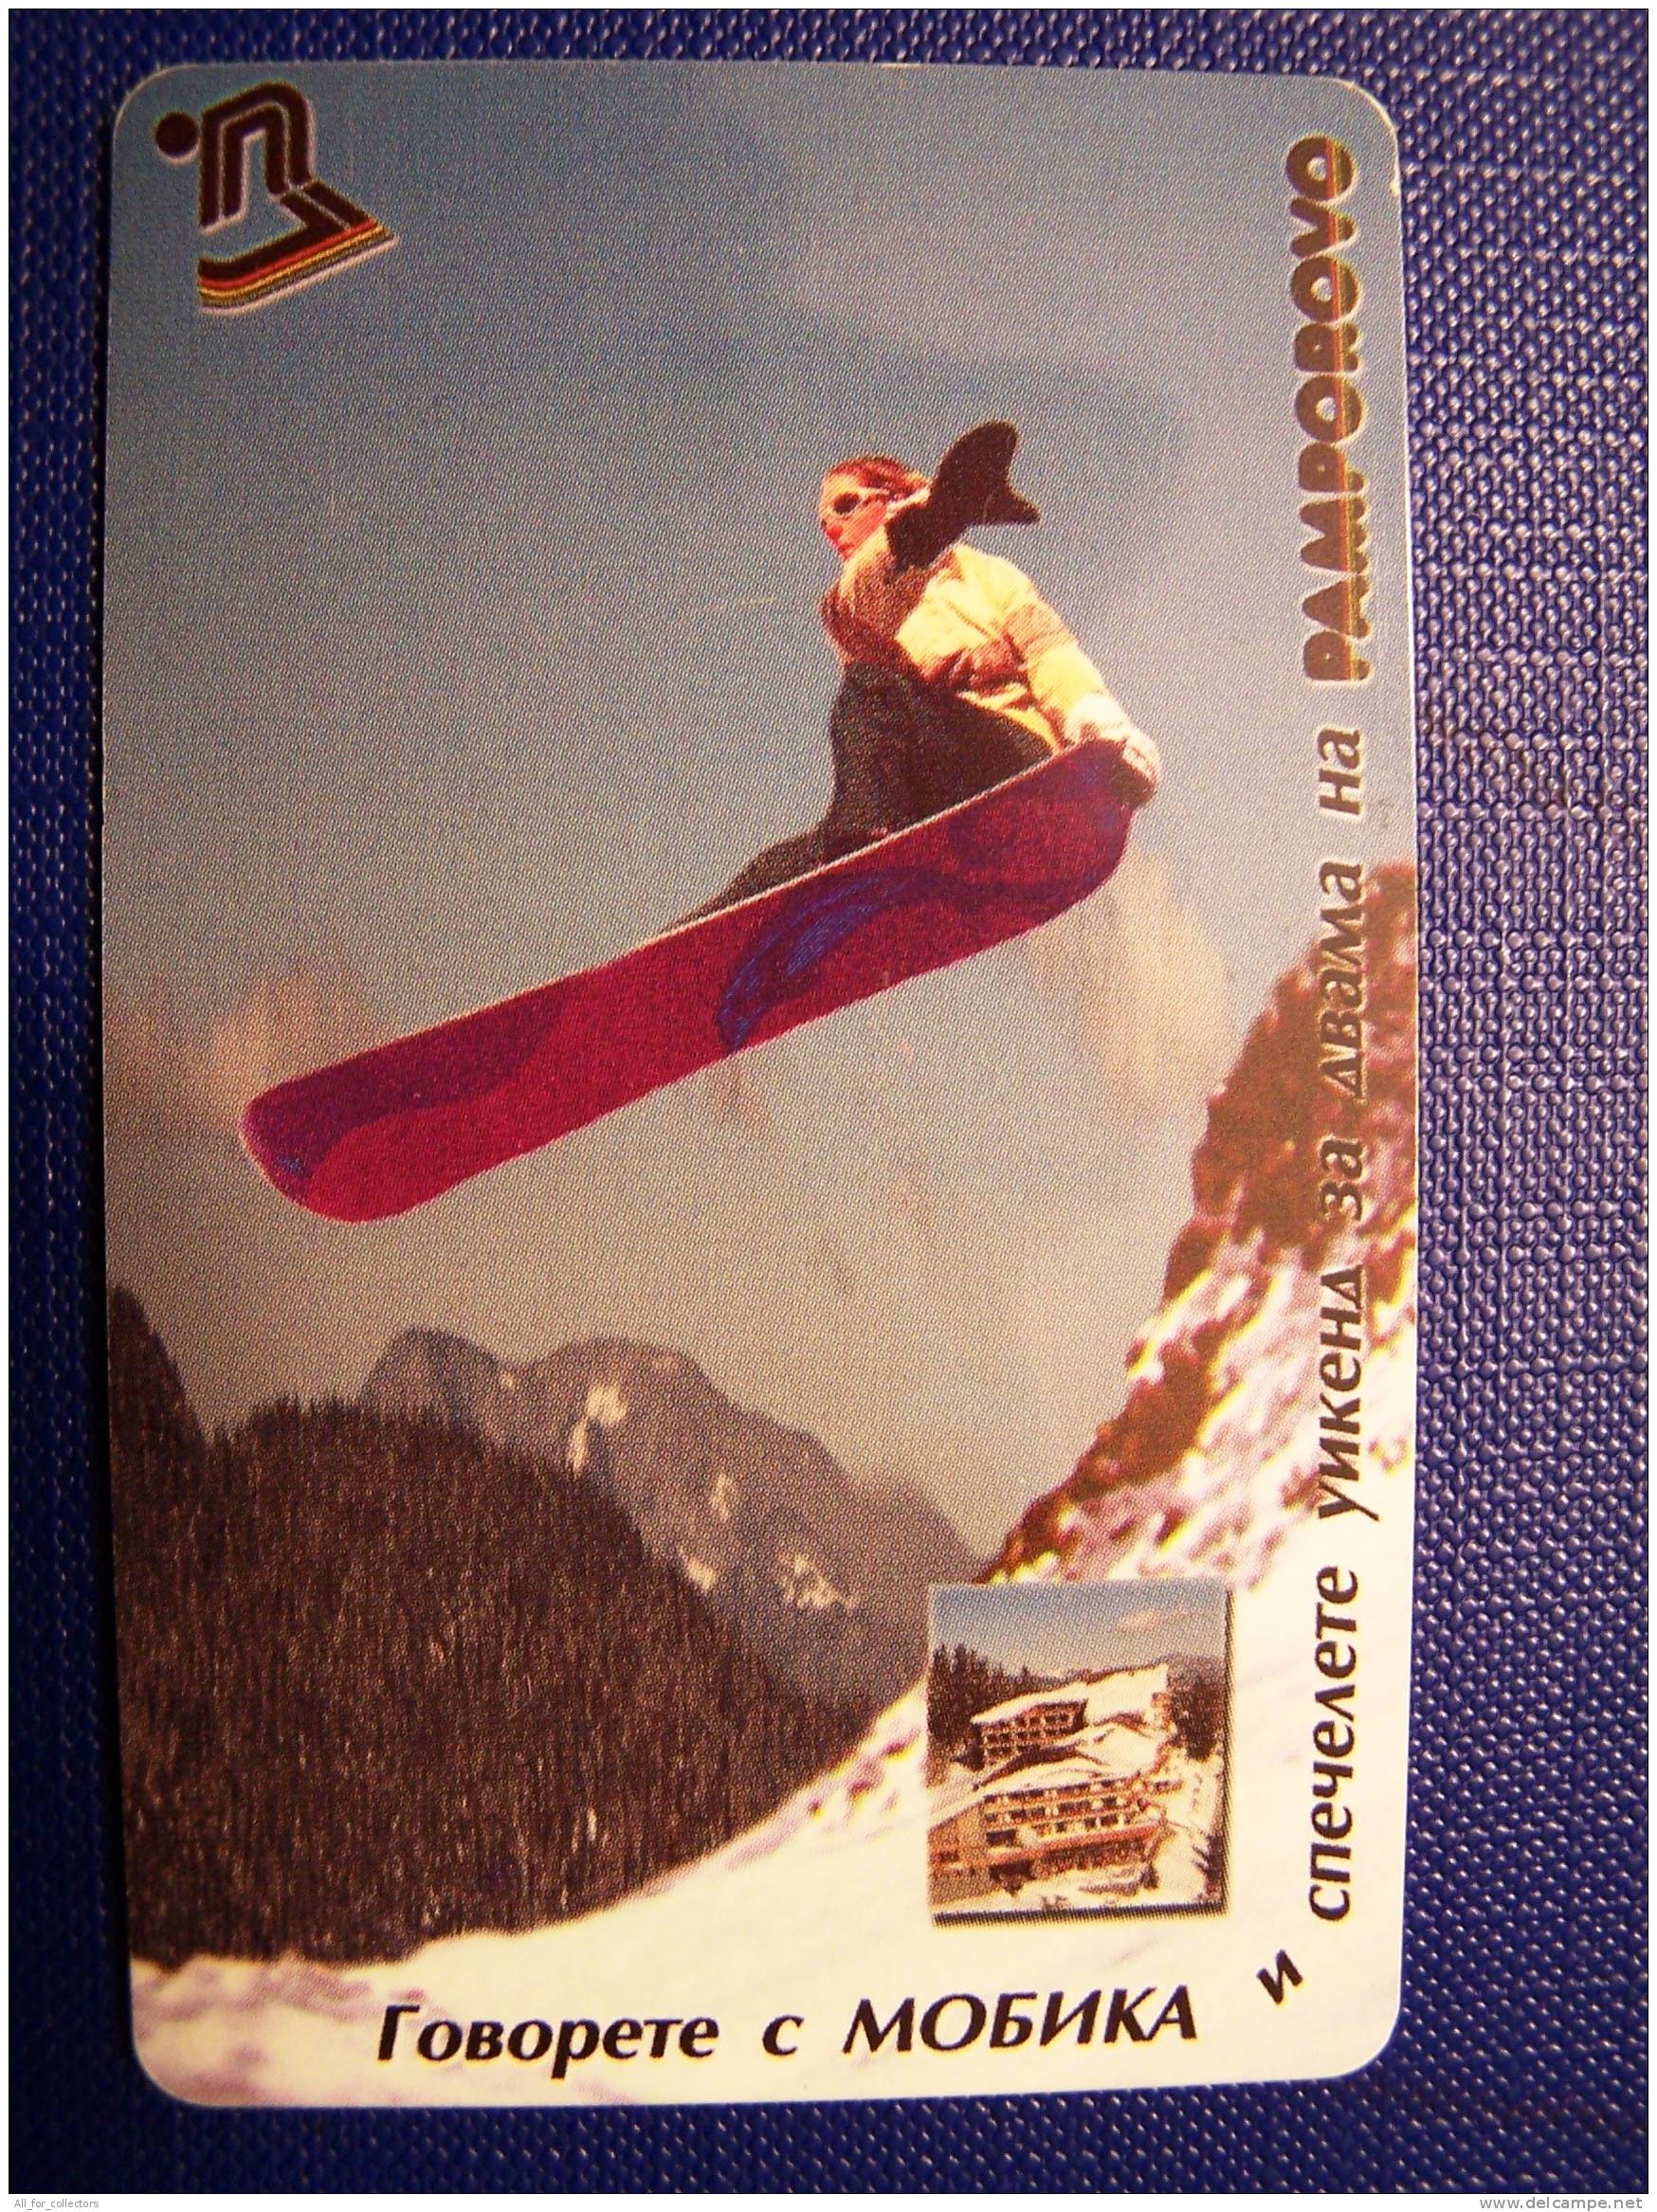 Mountains, Sport, Bulgaria Chip Phone Card, Mobika, Snowboard, - Gebirgslandschaften